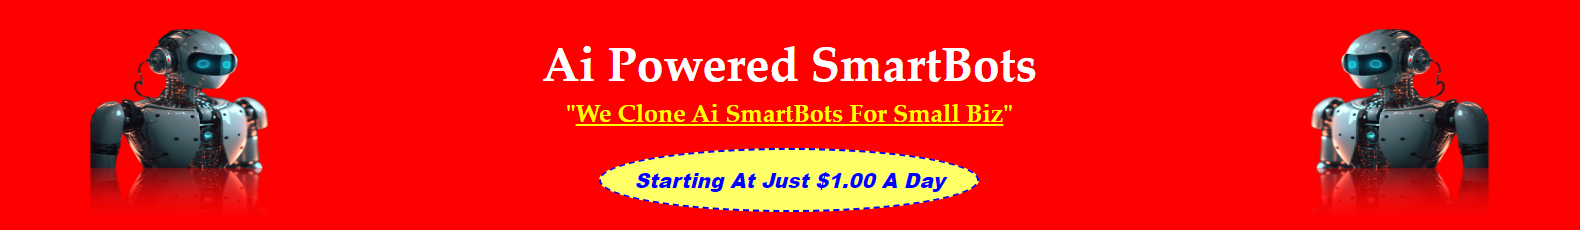 ai powered smartbots